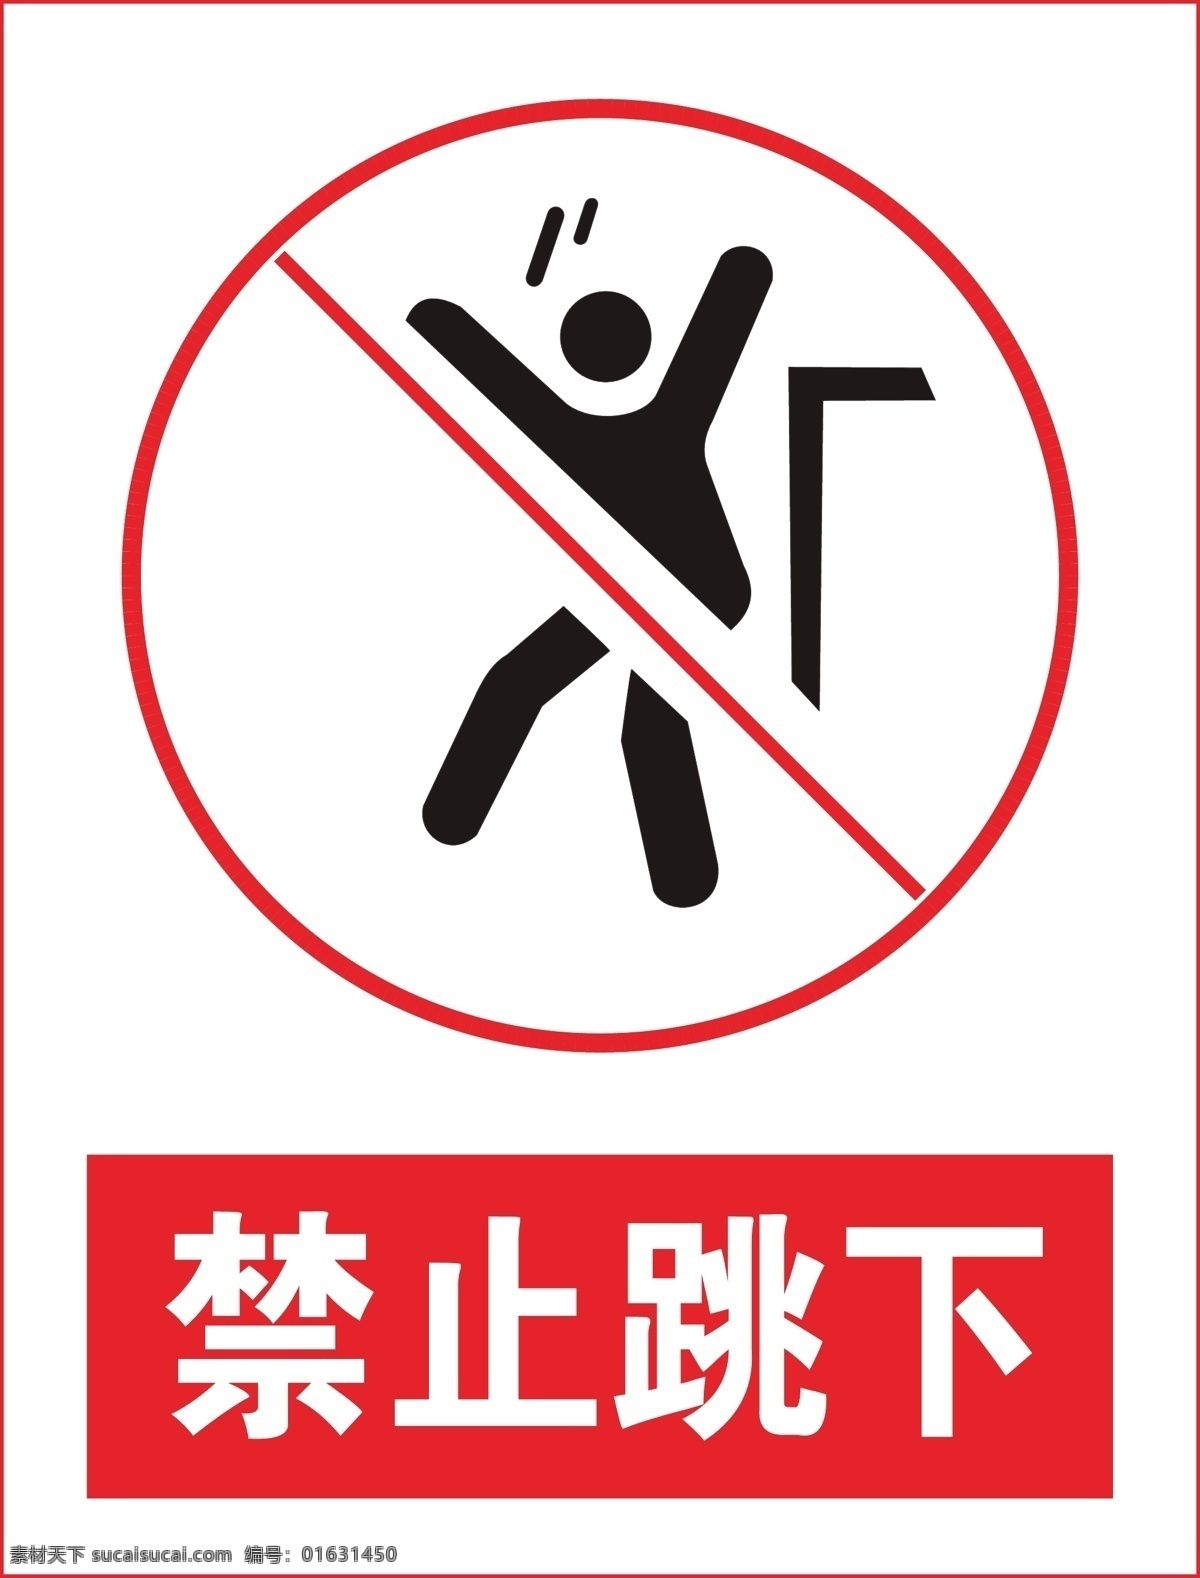 禁止跳下 跳下 禁止跳 禁止 标语安全 安全标志 当心标志 禁止标志 工地安全 工地标志 安全标示 红色标志 必须标志 安全 必须 红色警告 红色警示 红色安全 标示